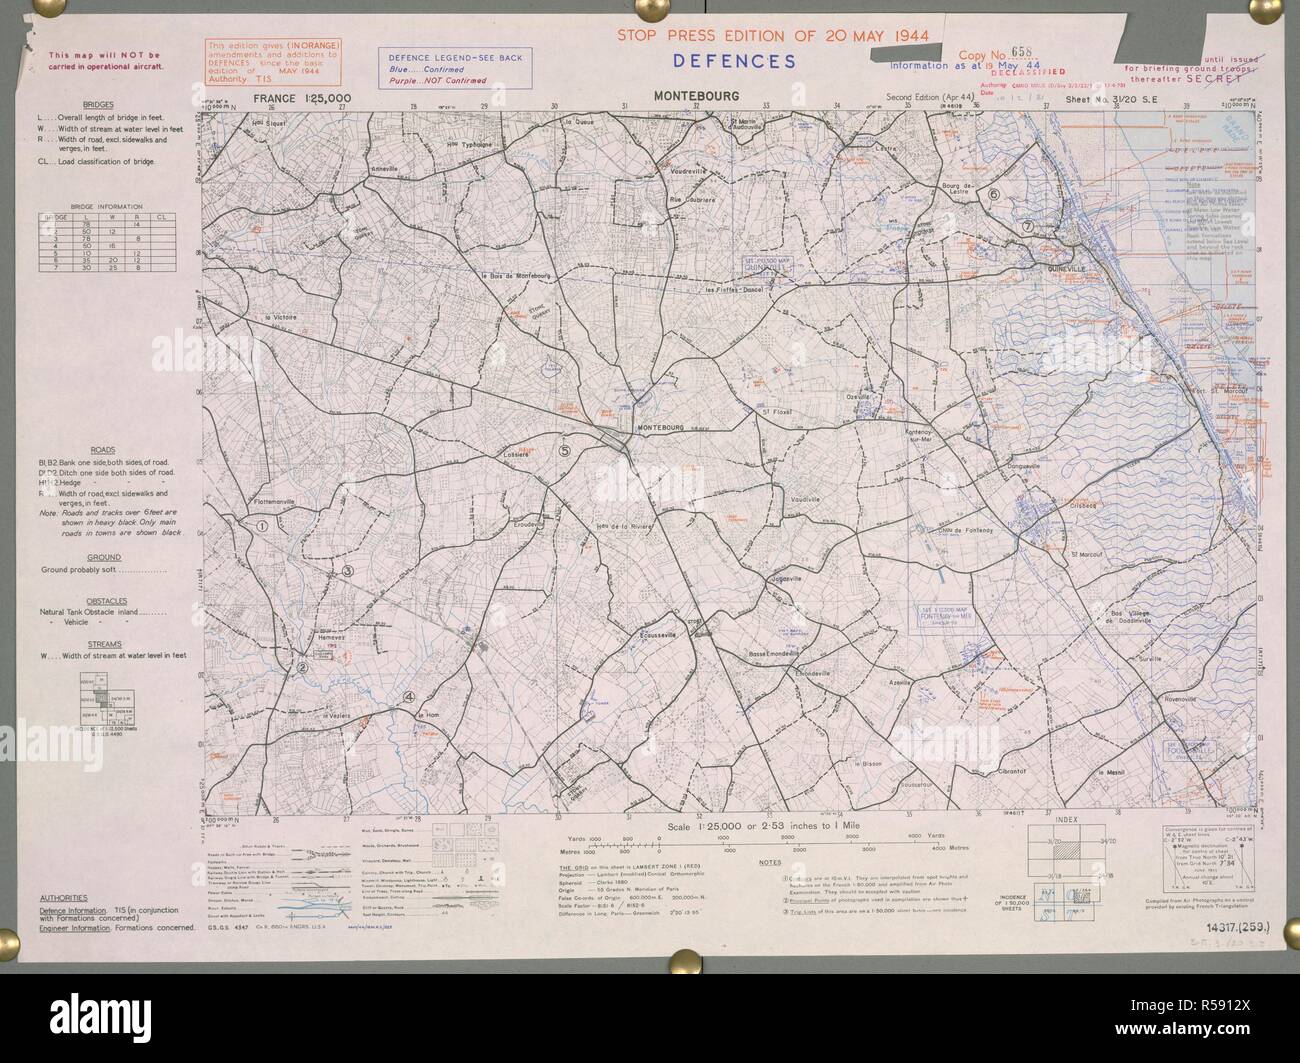 Montebourg, Francia. Una mappa della Seconda Guerra Mondiale. Montebourg fu liberata il 19 giugno 1944. . Francia 1:25.000 difese, razzista. [Londra] : Ufficio di guerra, 1944. Fonte: Mappe 14317.(259) 31-20 SE. Foto Stock